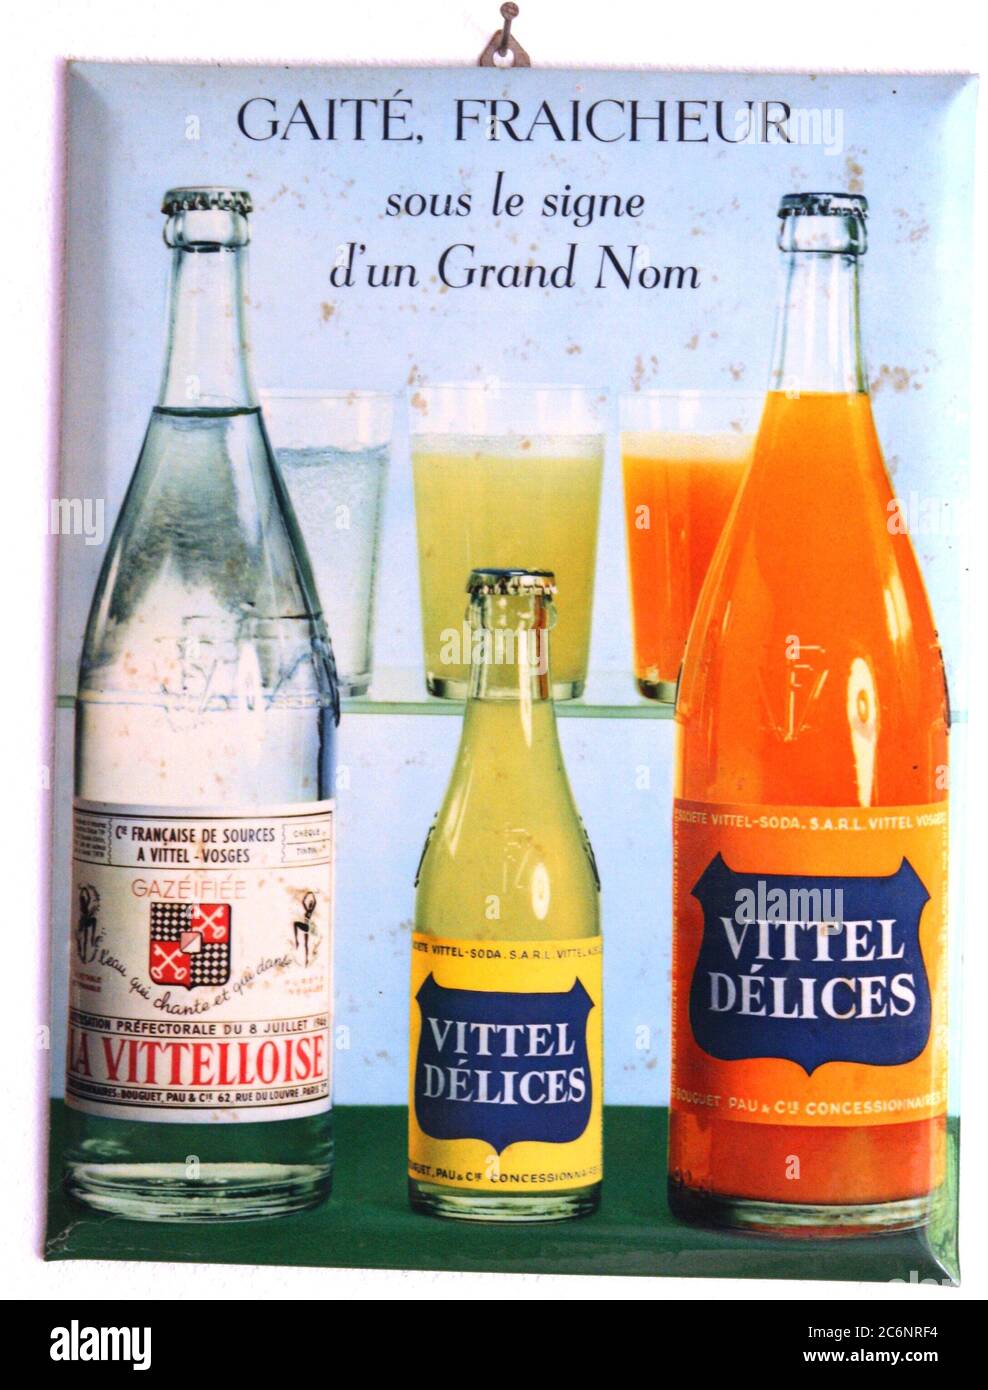 Glacoide Vittel Delices Vitteloise vers 1960 Stock Photo